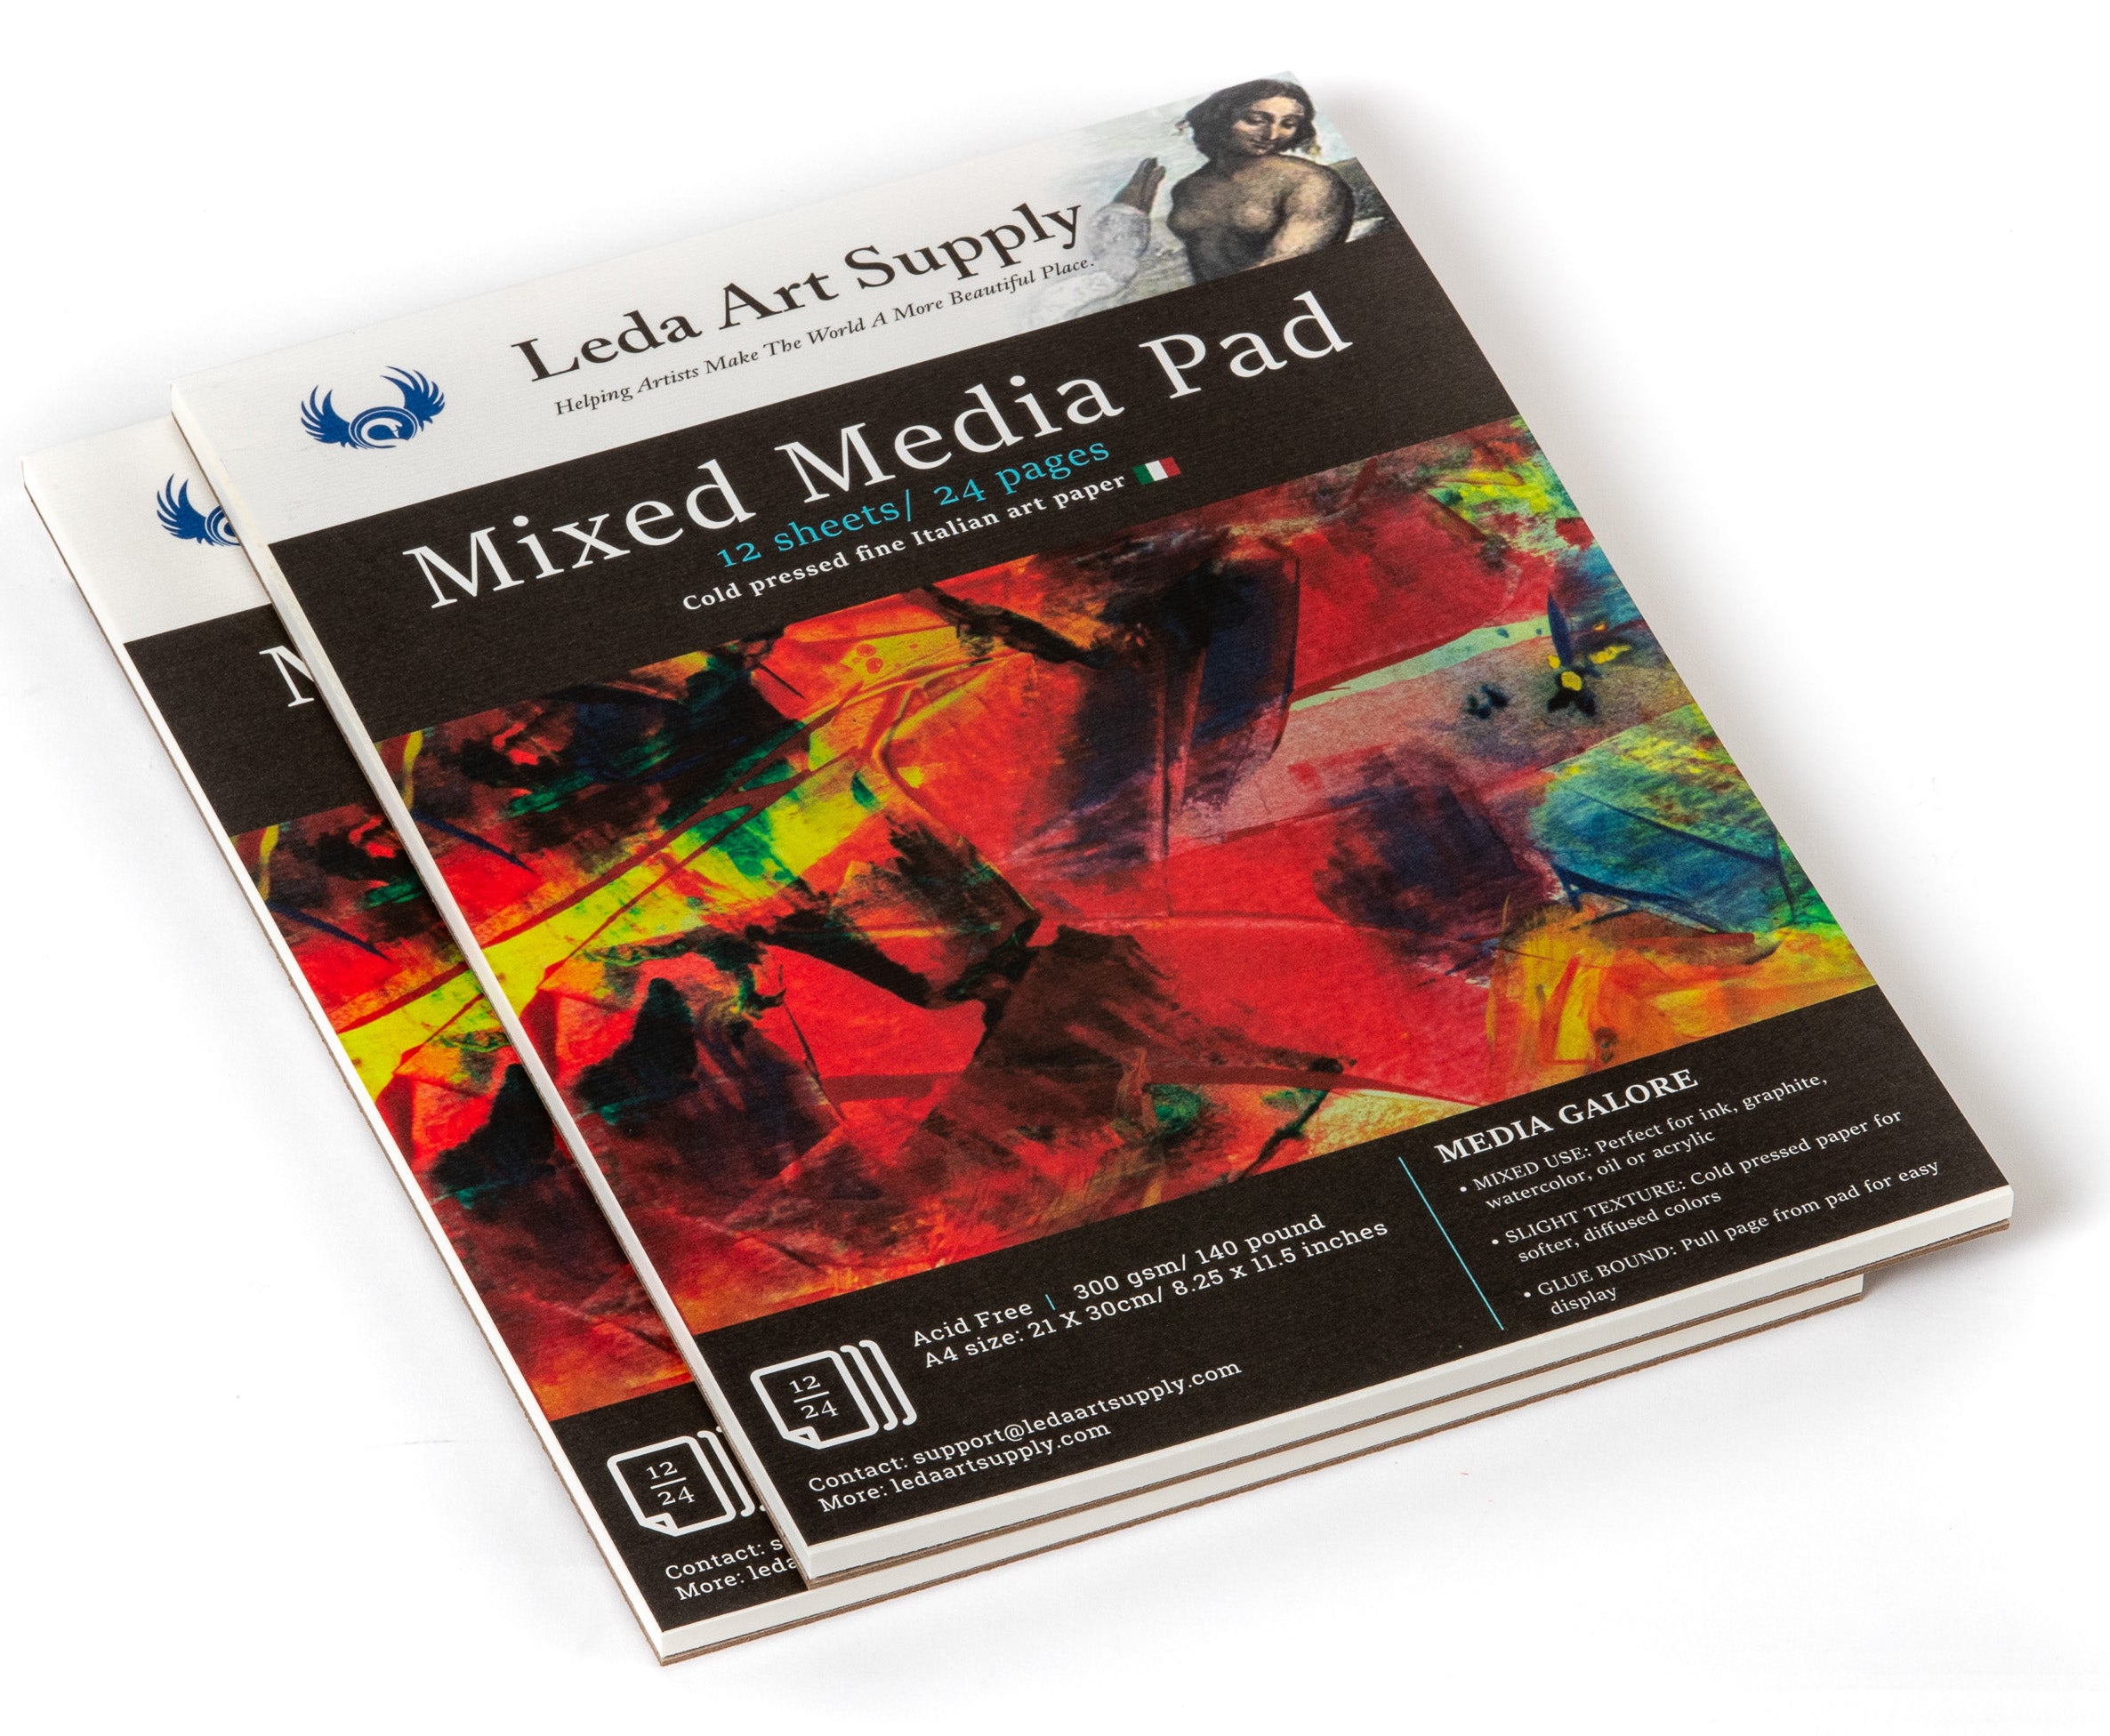 Mixed Media Paper Pad - Pro Art Supplies 